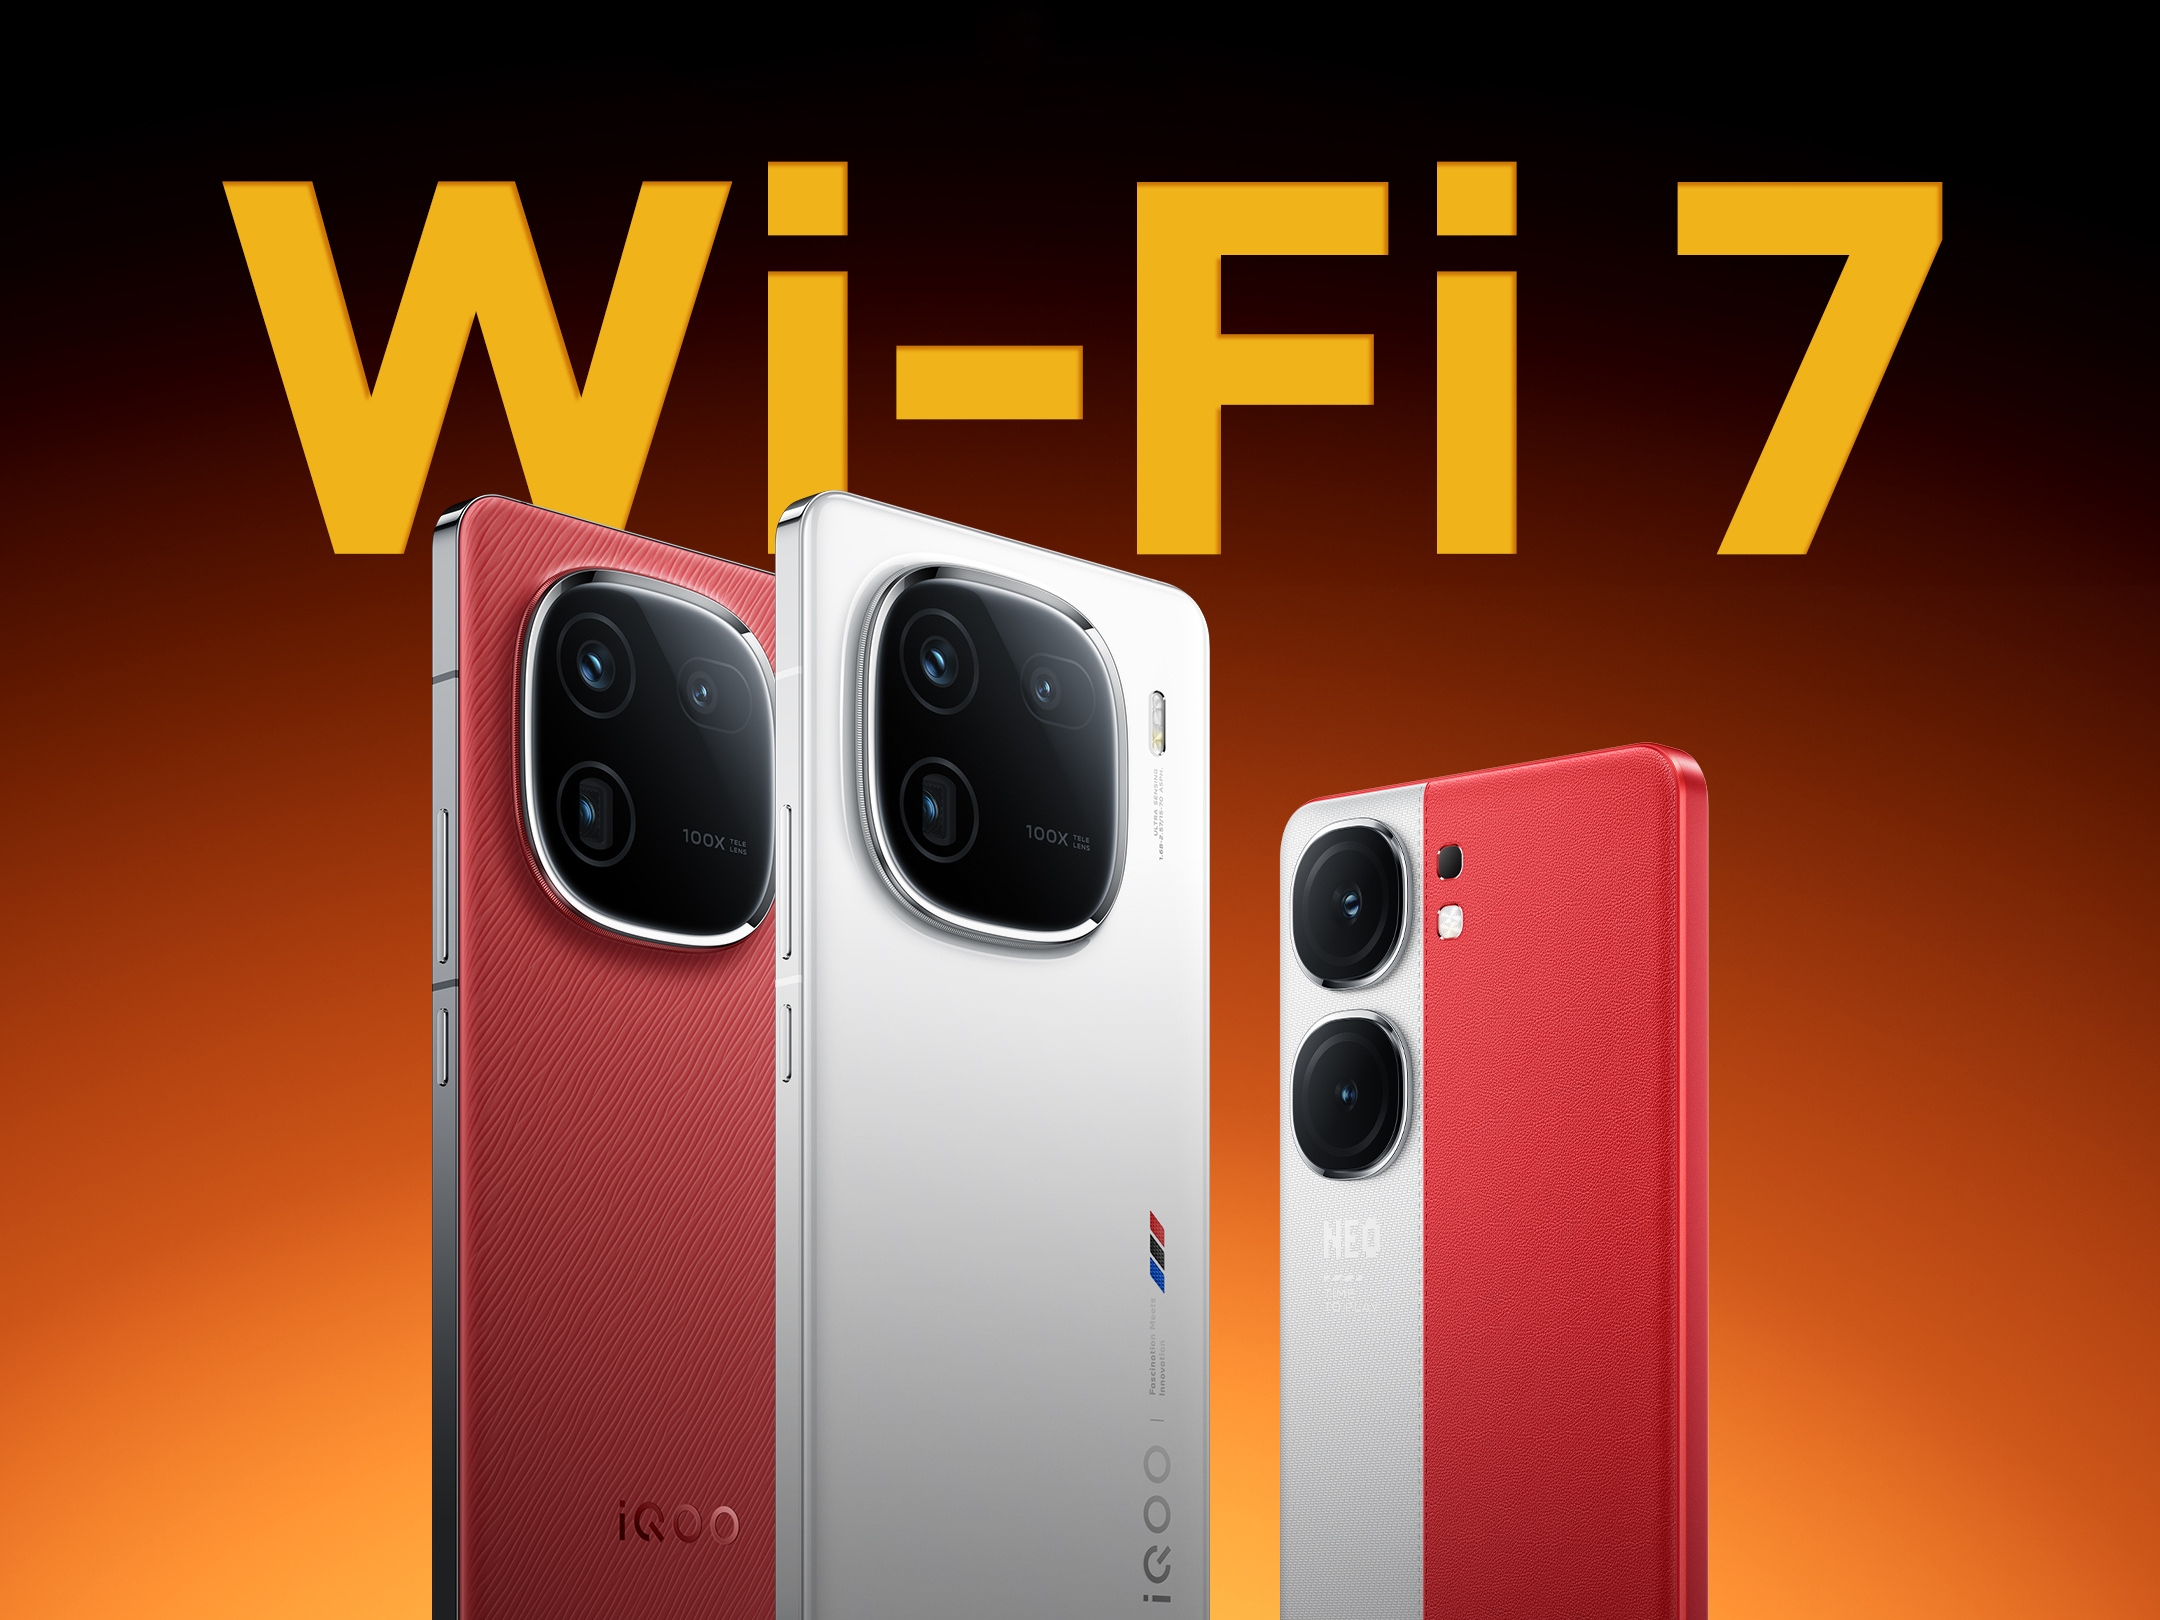 Smarttelefonene i iQOO 12- og iQOO Neo 9-serien har fått støtte for Wi-Fi 7 med en programvareoppdatering.